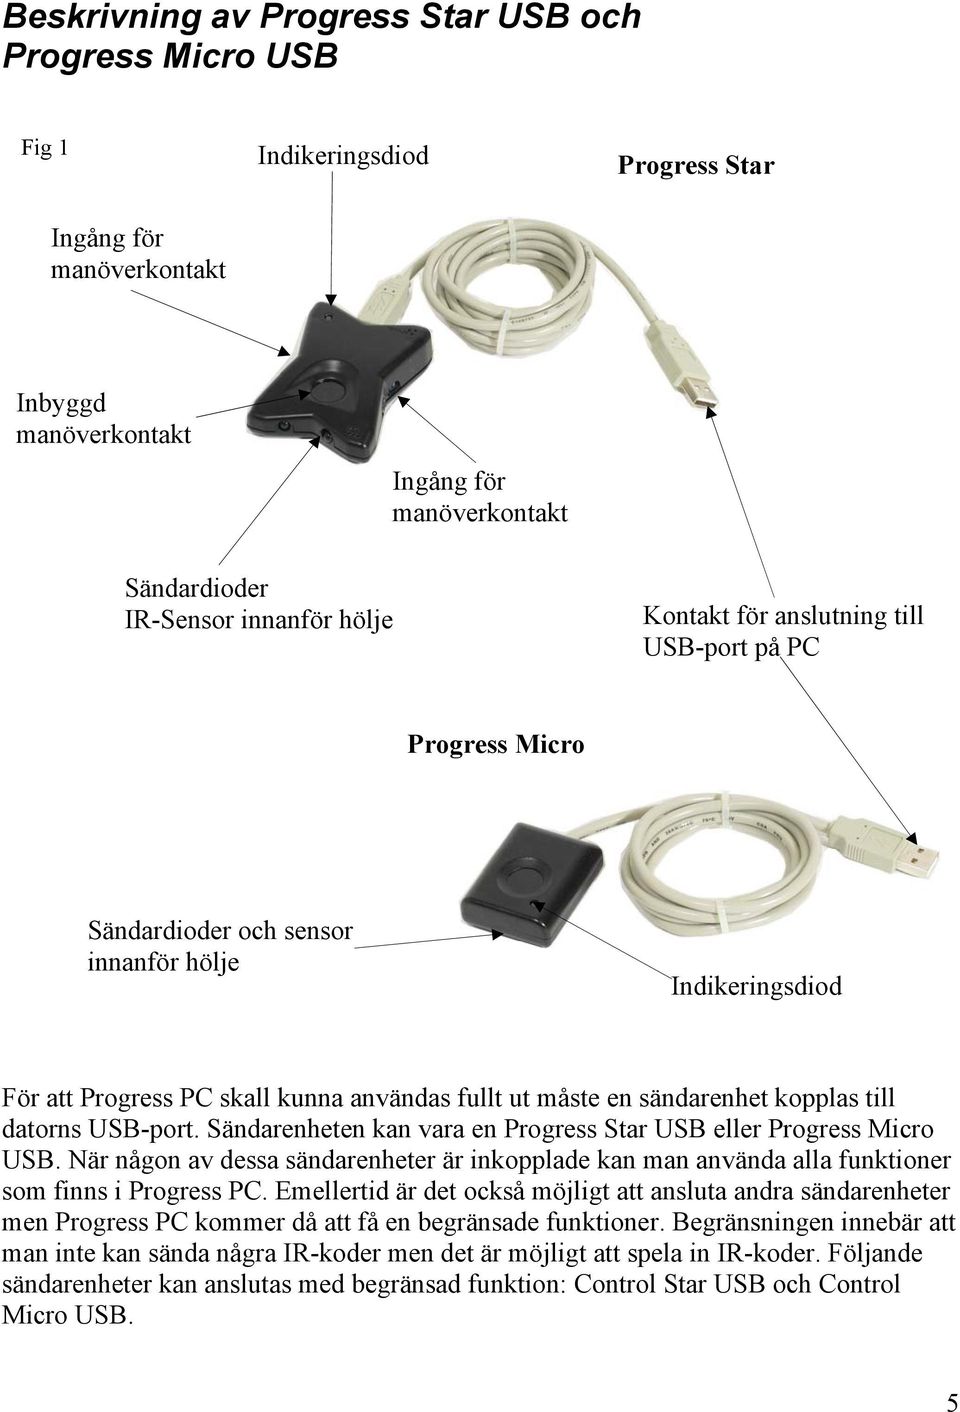 till datorns USB-port. Sändarenheten kan vara en Progress Star USB eller Progress Micro USB. När någon av dessa sändarenheter är inkopplade kan man använda alla funktioner som finns i Progress PC.